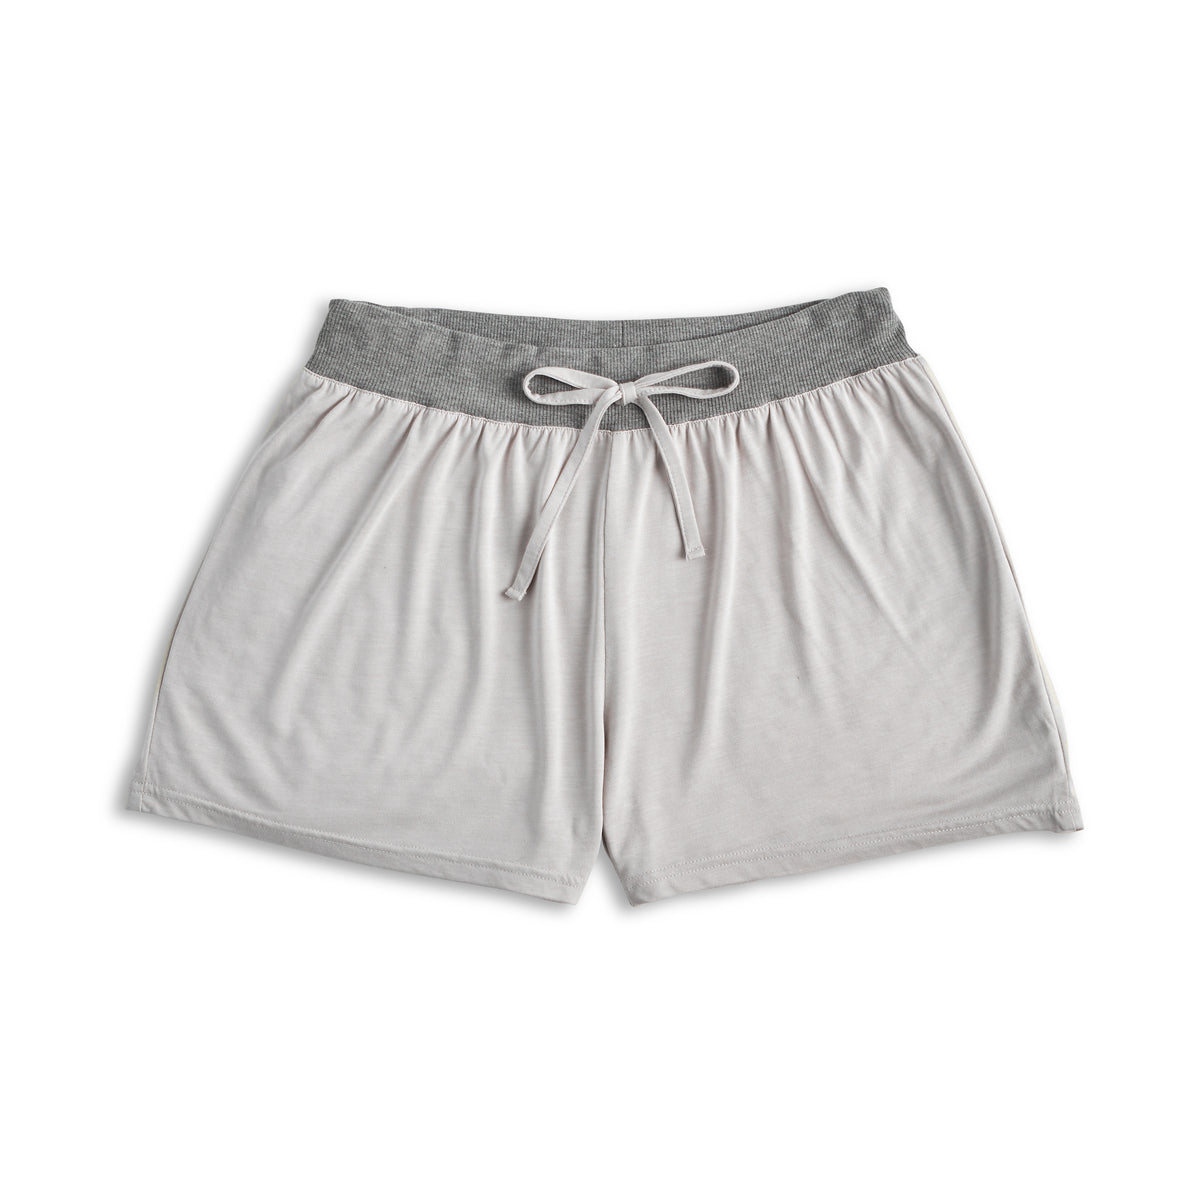 Gray Bamboo Shorts- M/L